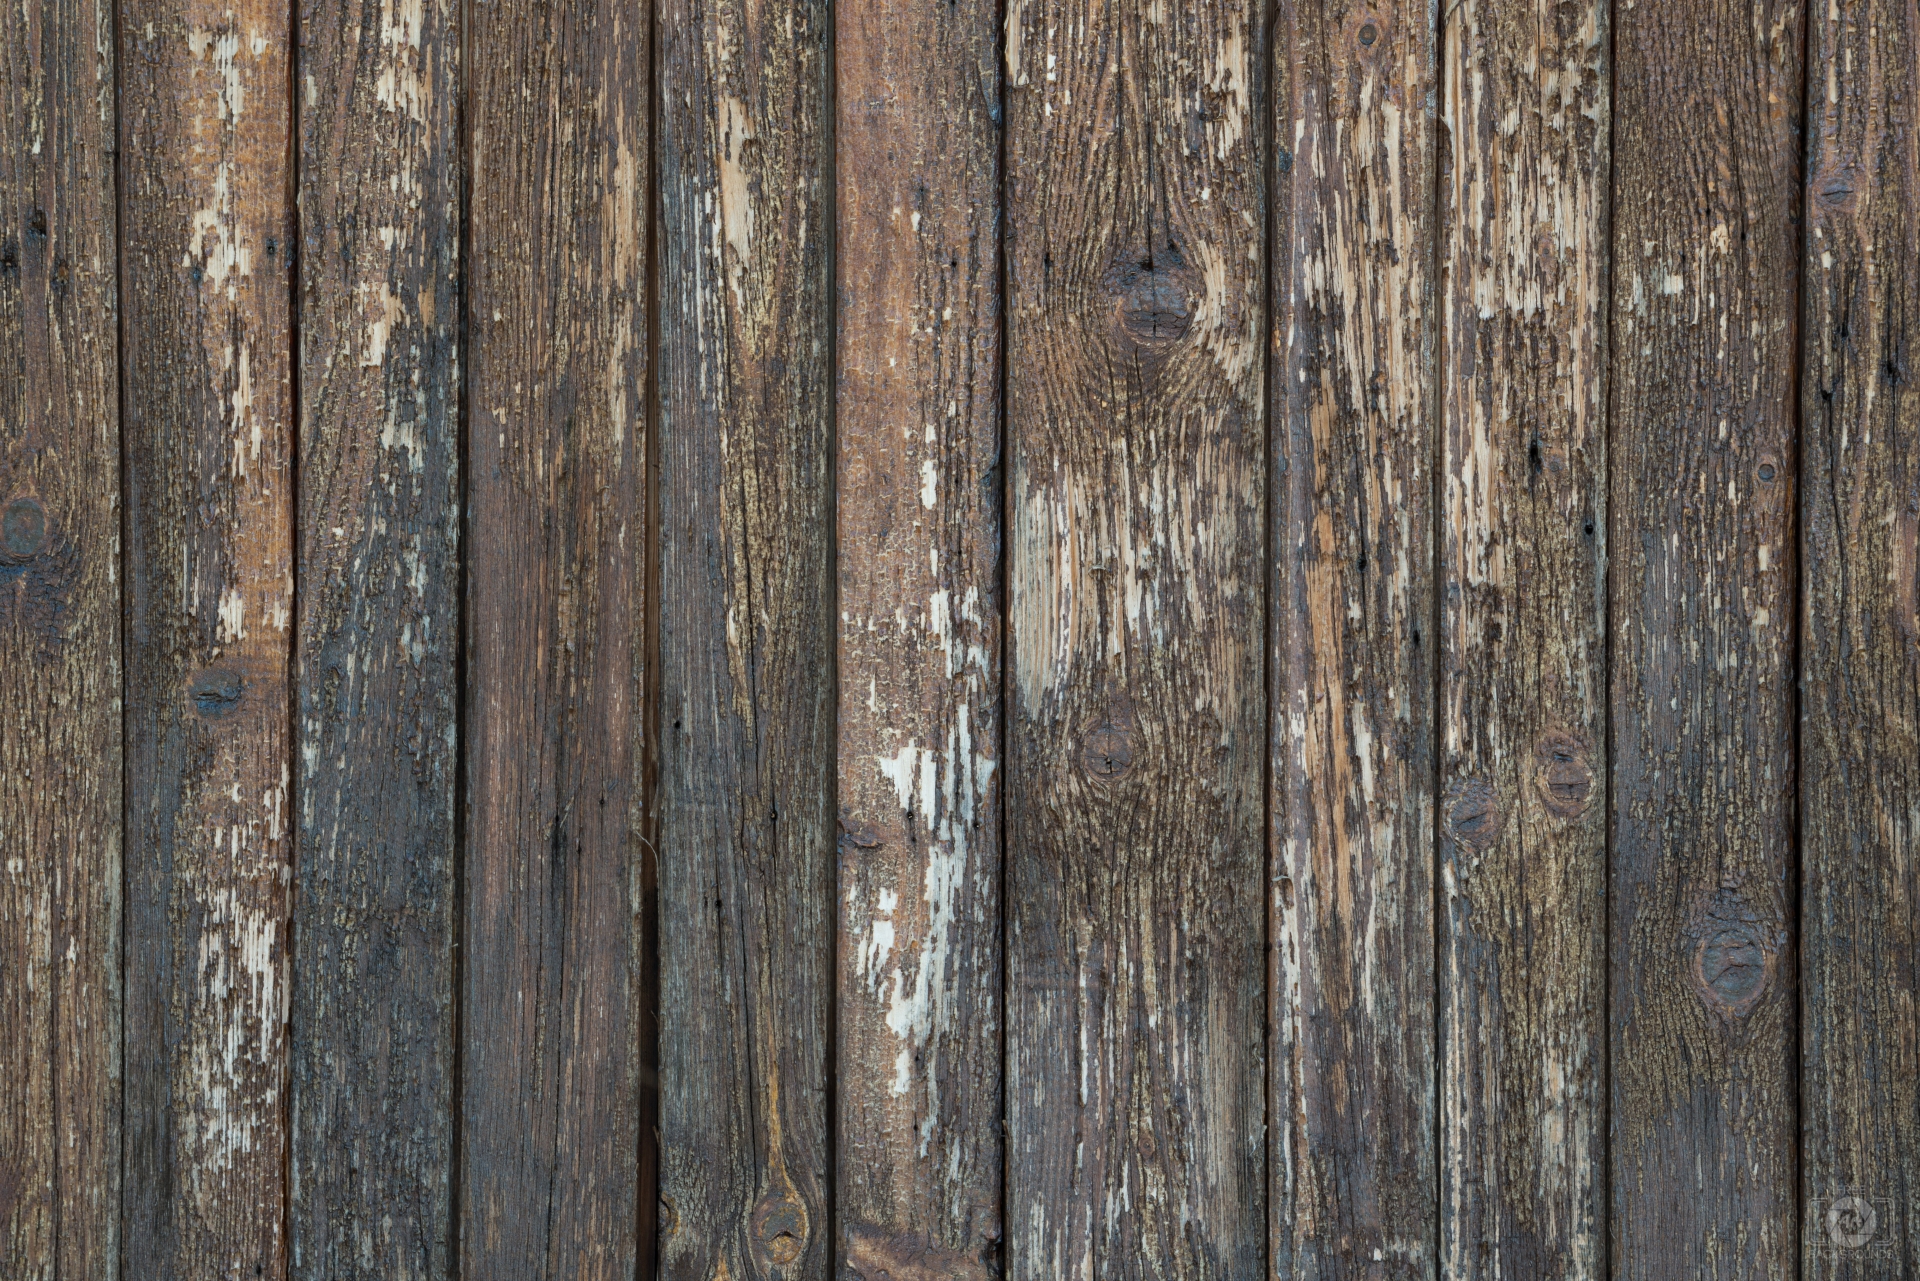 Textures ván gỗ cũ tạo nên sự độc đáo và ấn tượng trong bức ảnh của bạn. Hãy thưởng thức những chi tiết tinh tế và đầy sáng tạo trong textures gỗ cũ này.